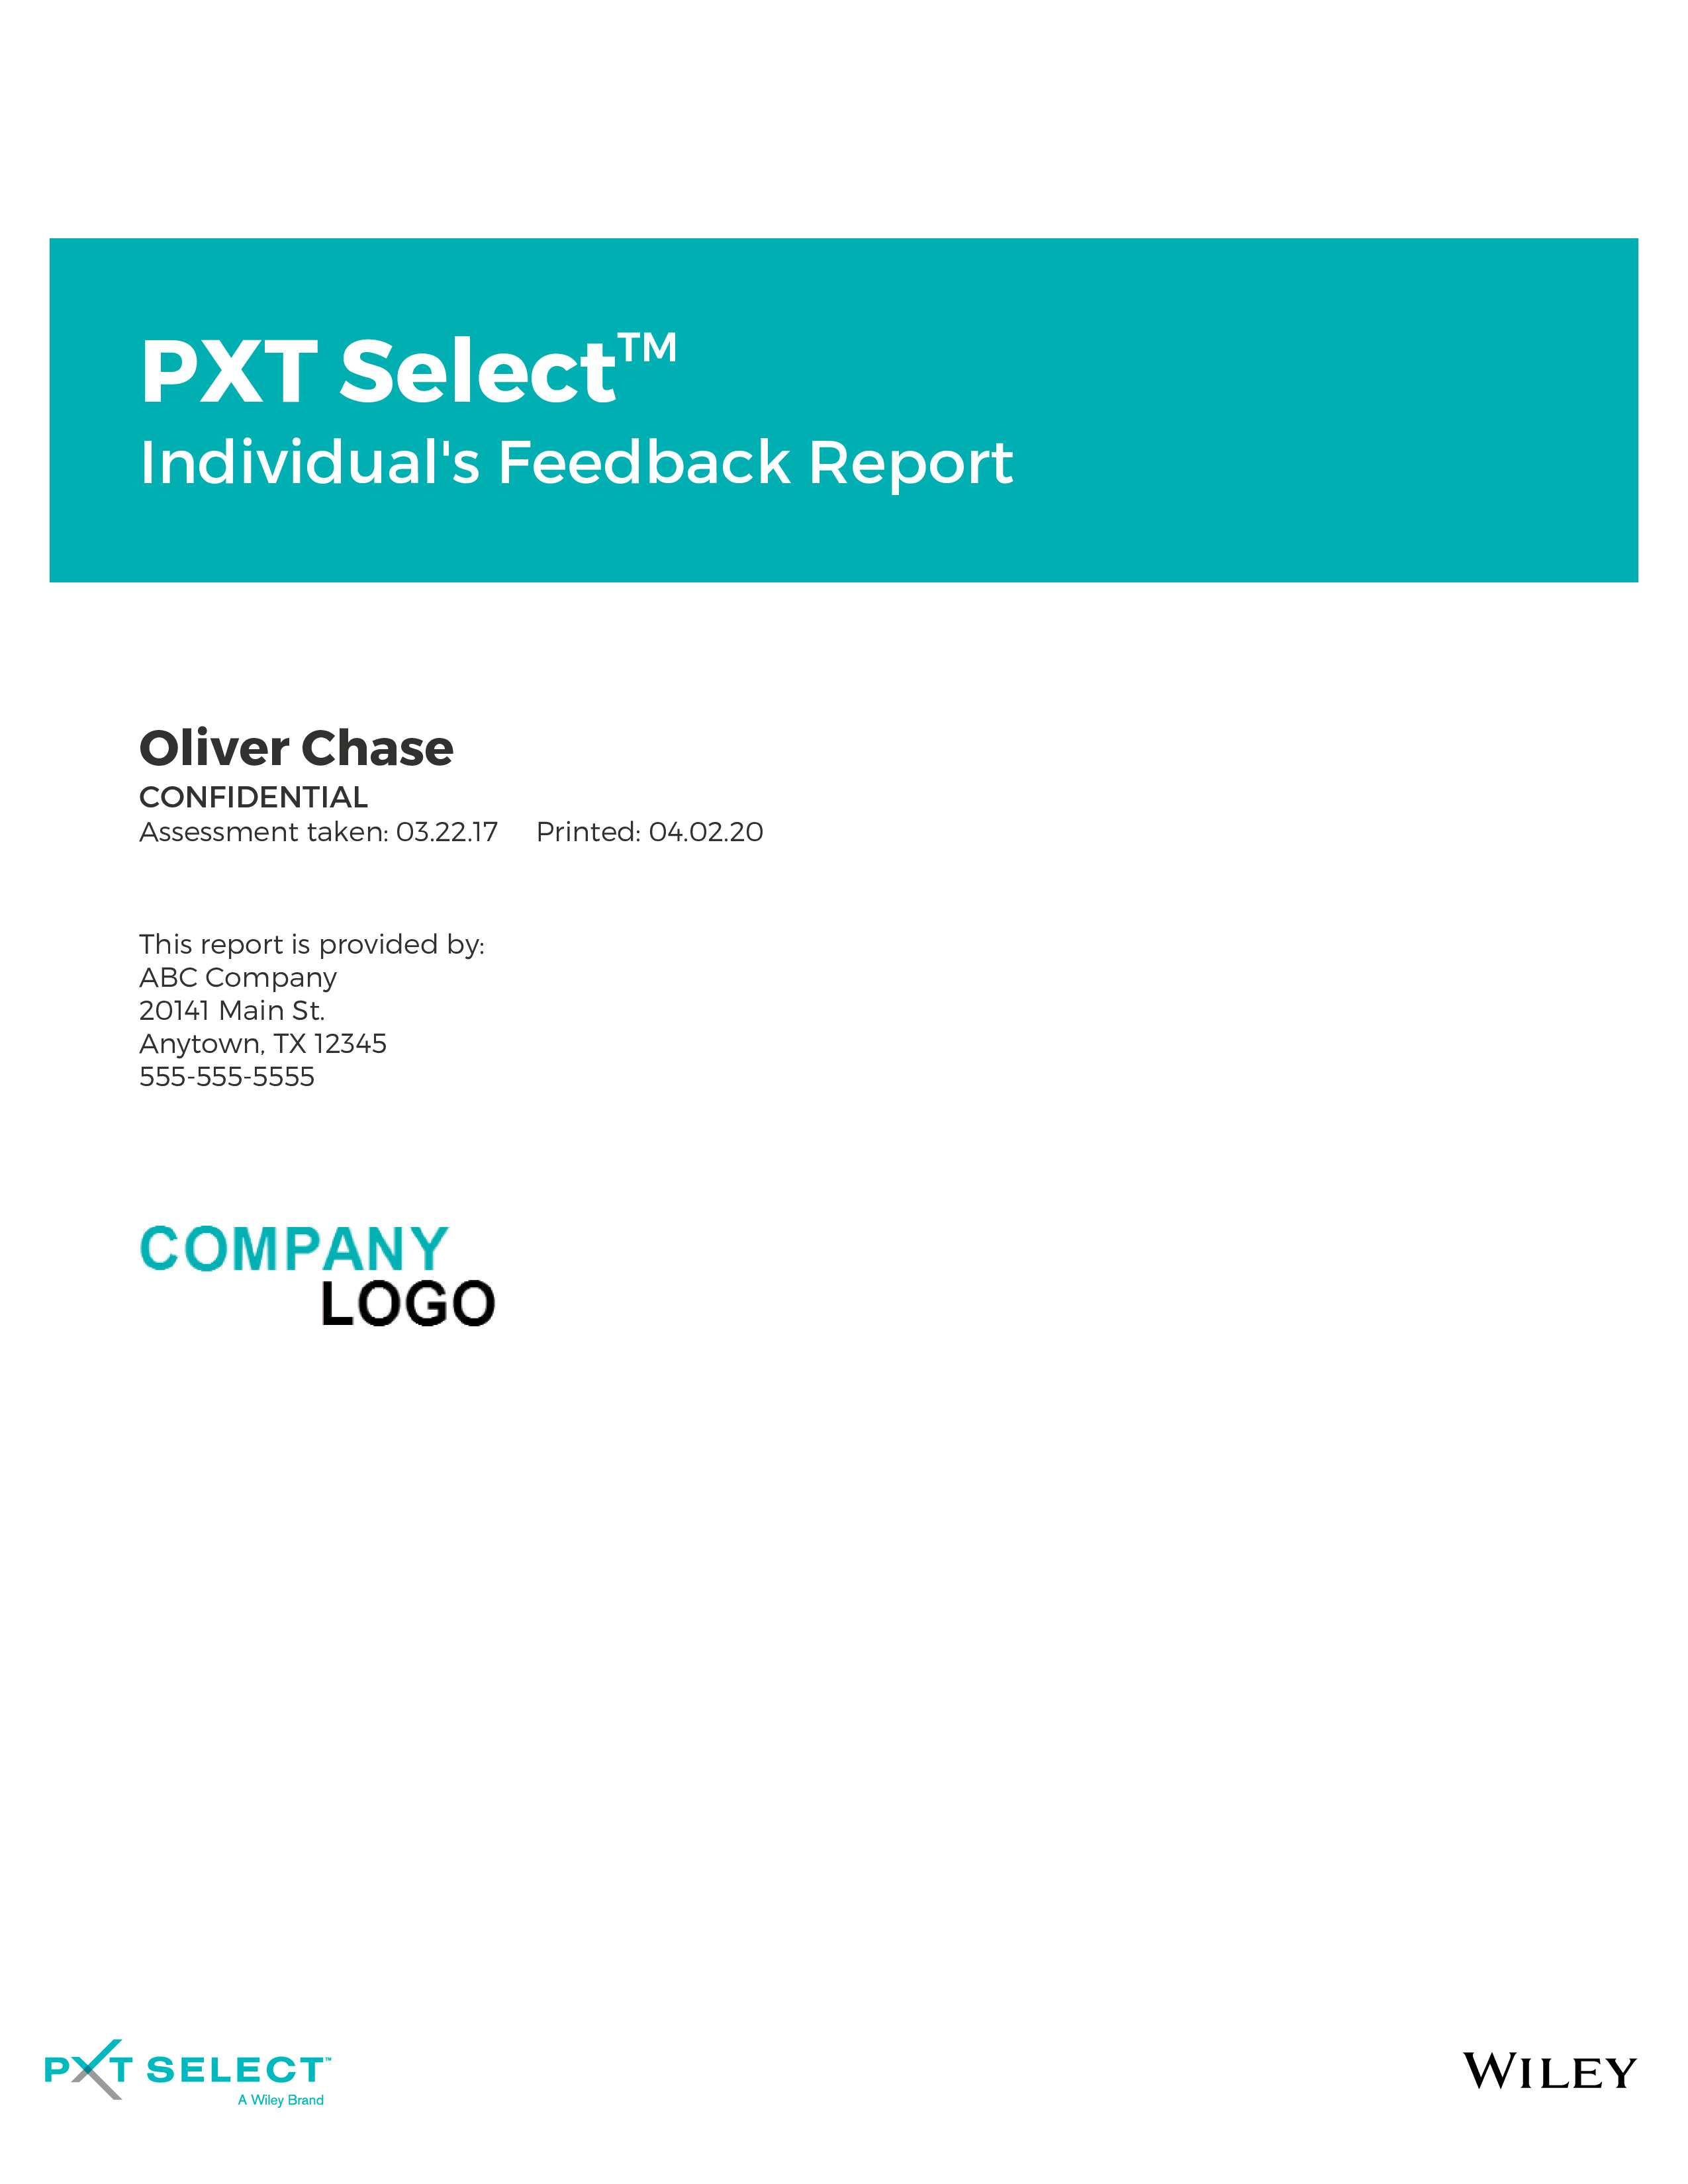 PXT Select Individual's Feedback Report November 2021 Image